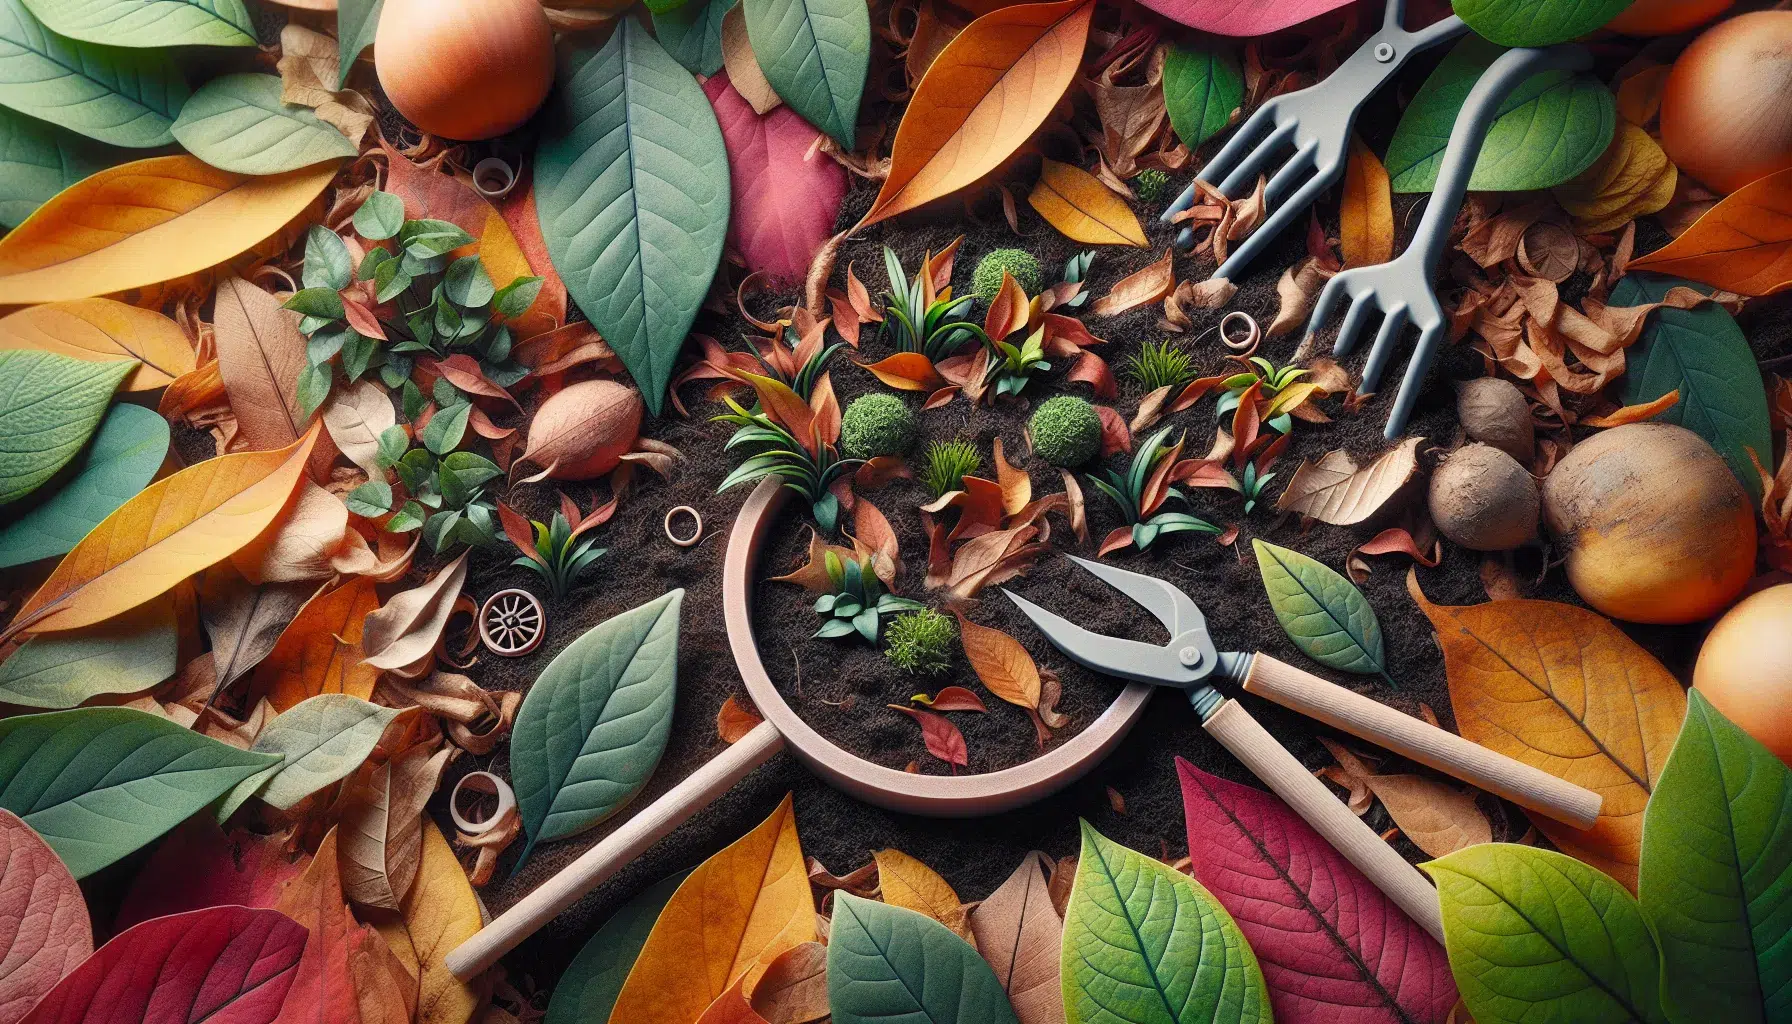 Imagen de hojas y restos vegetales esparcidos en un jardín, representando la técnica de mulching recomendada para mejorar la salud de las plantas en un hogar.